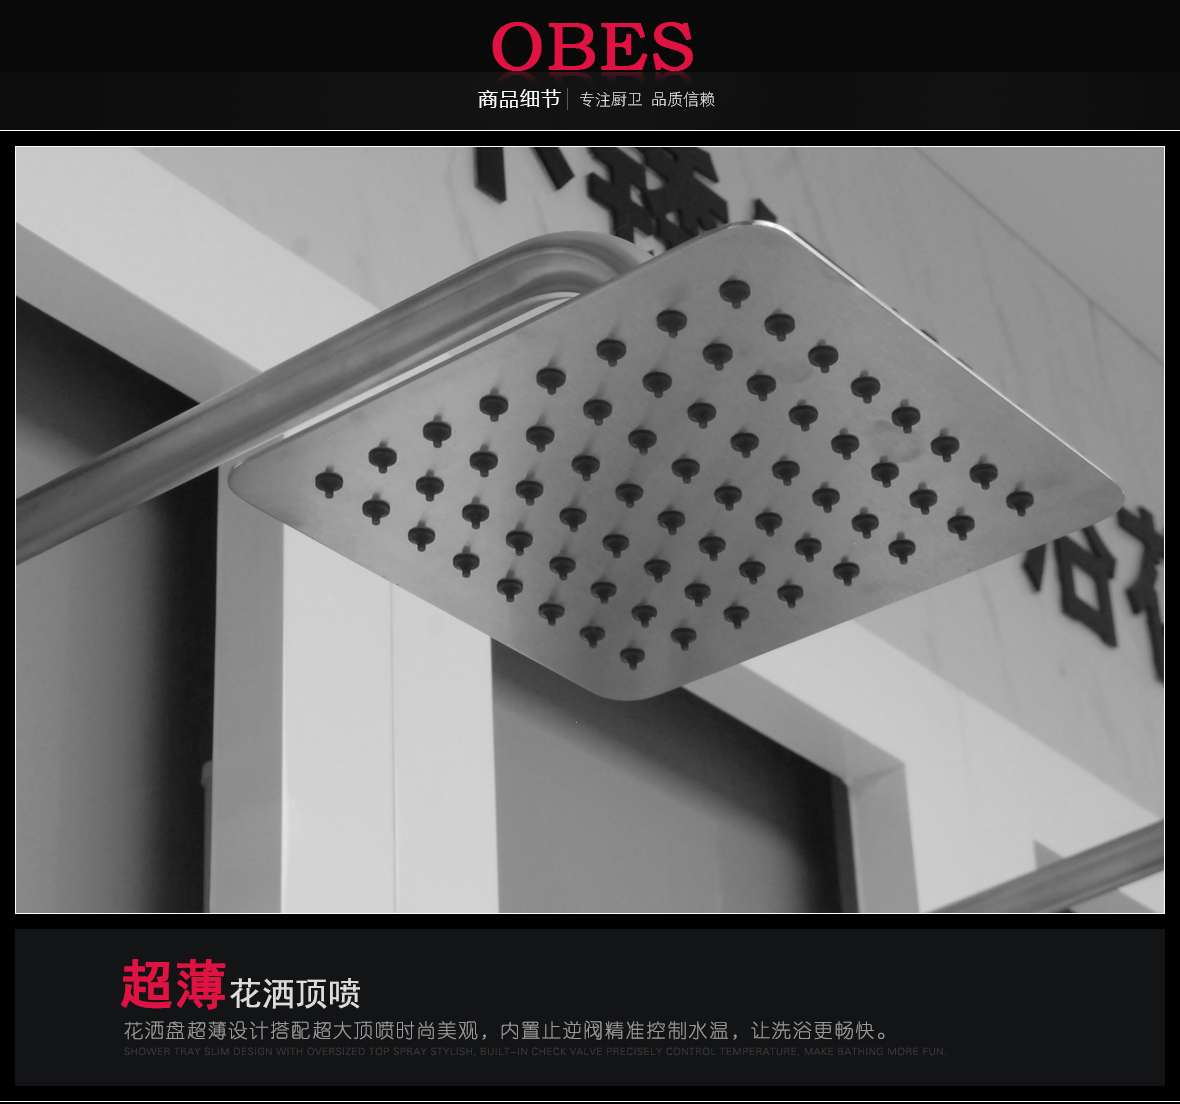 欧贝斯 OBS-913D型号 大喷头 花洒 高度可调节 不锈钢材质 